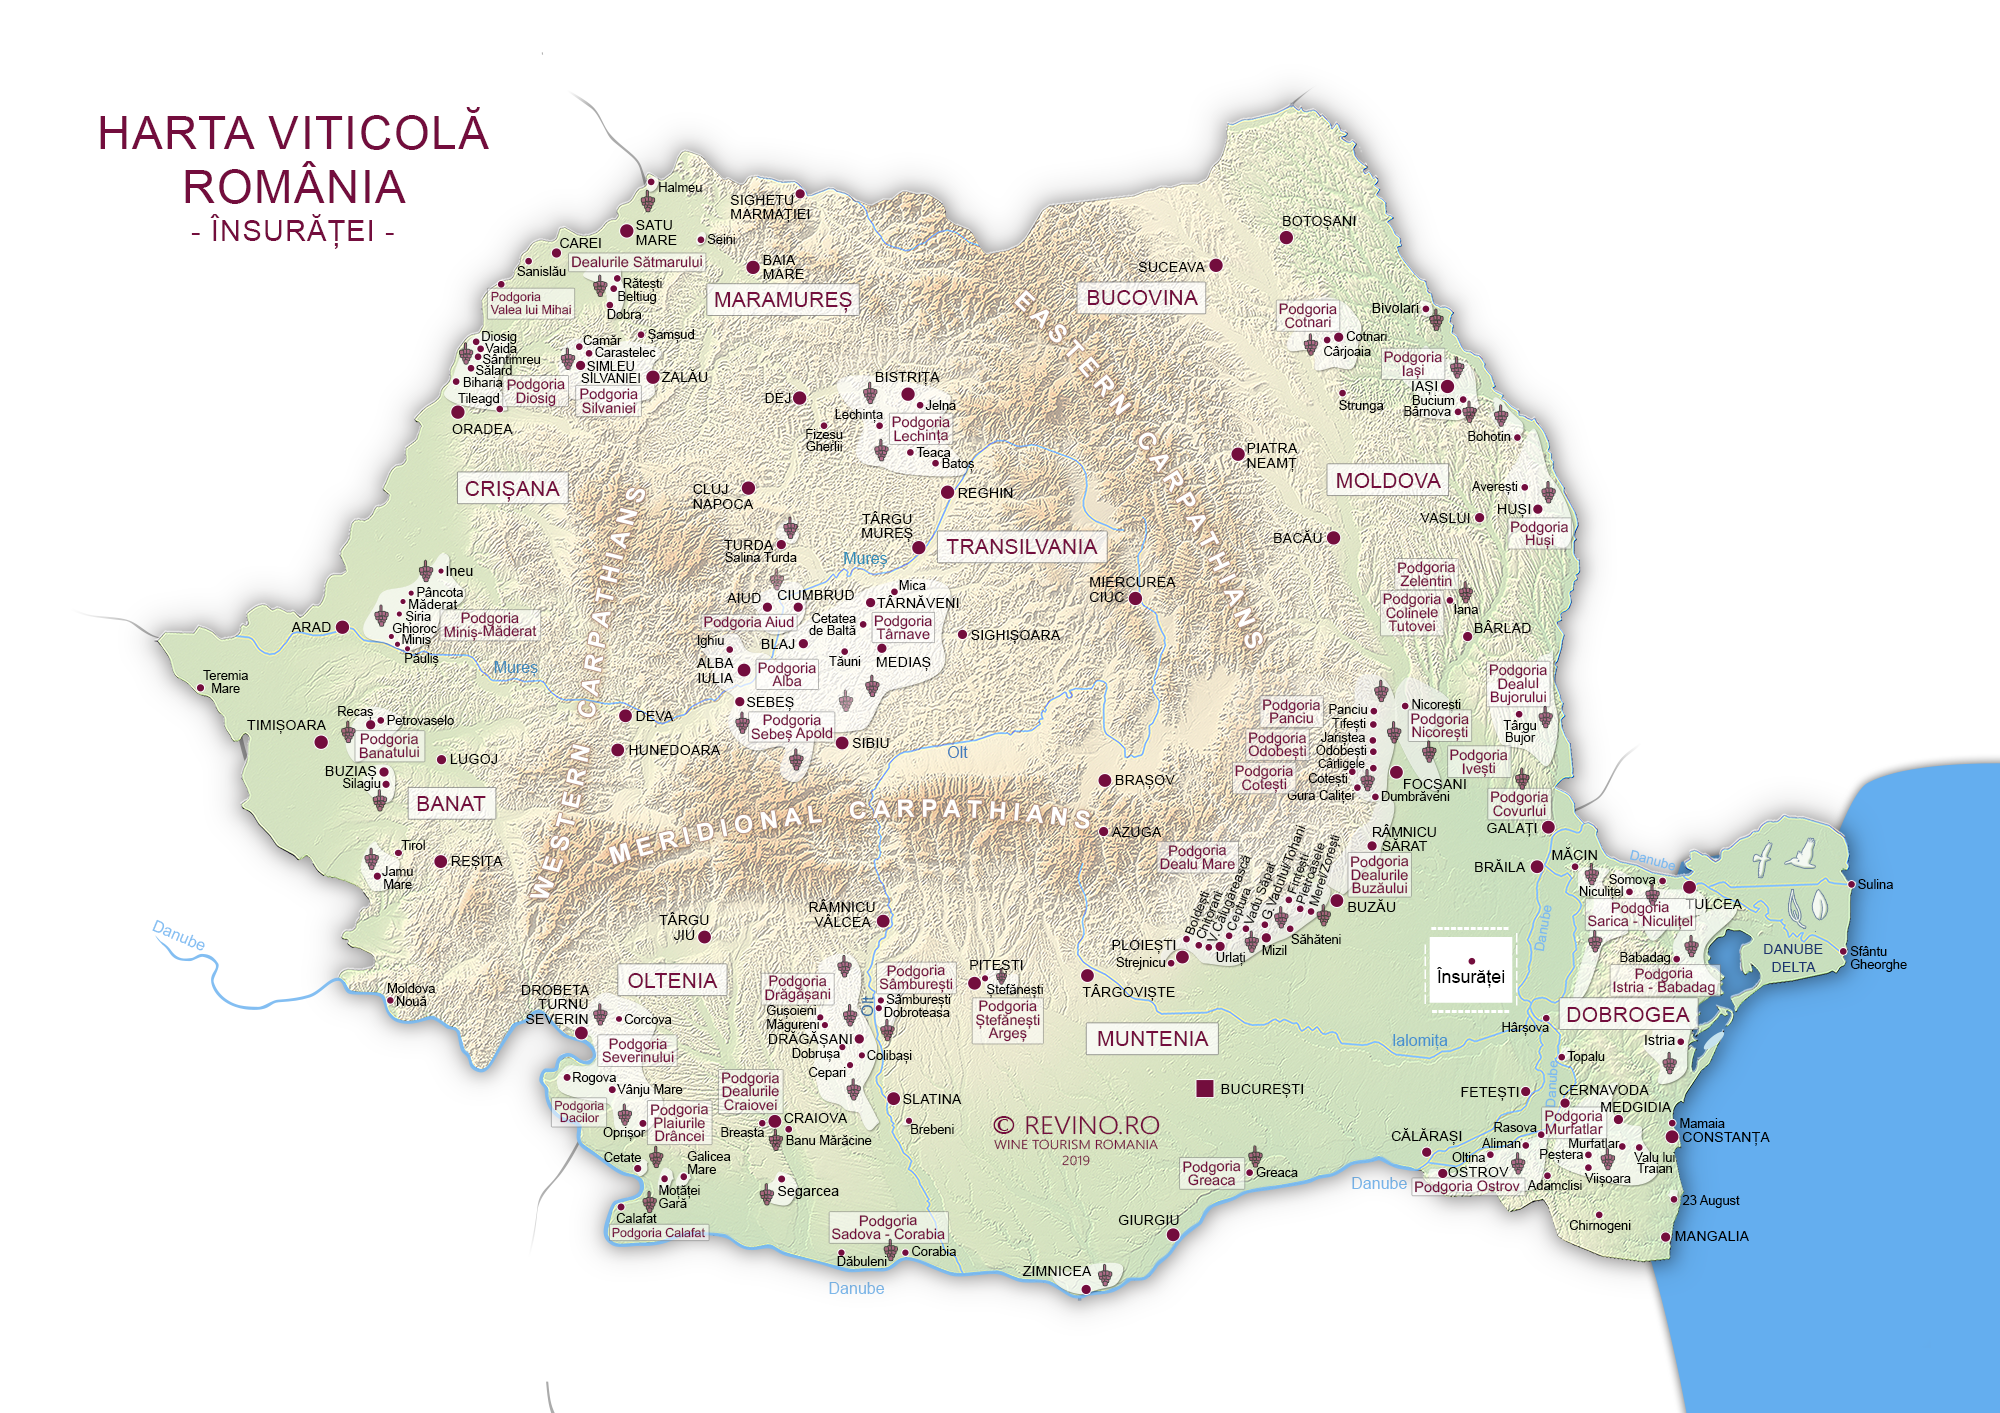 Harta viticola insuratei